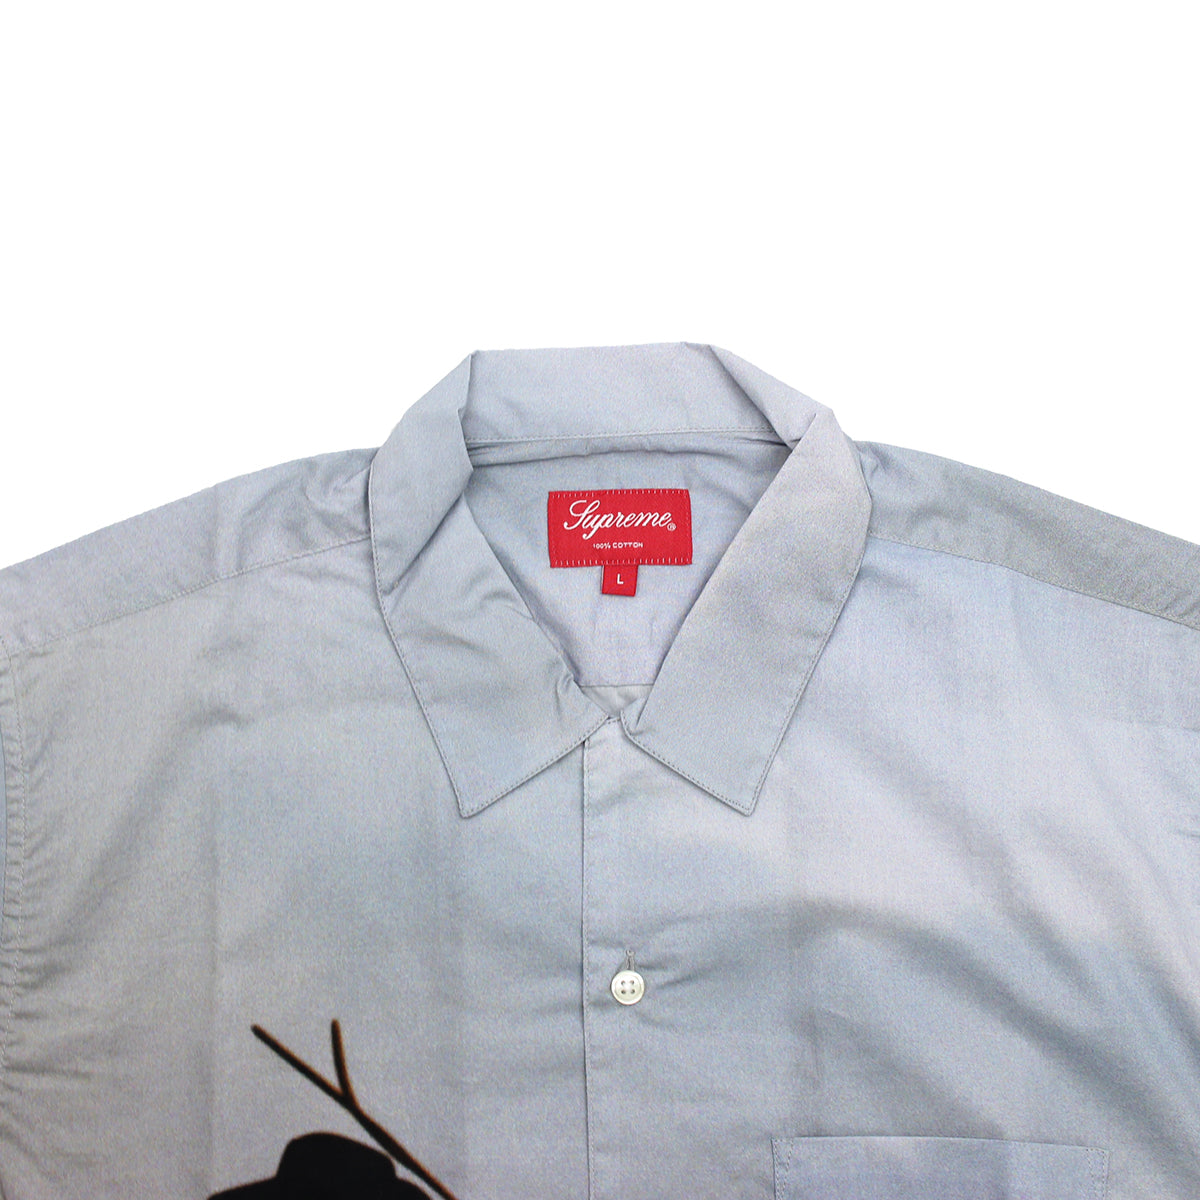 Supreme Cowboy Shirt - HUNDO P Buy&Sell